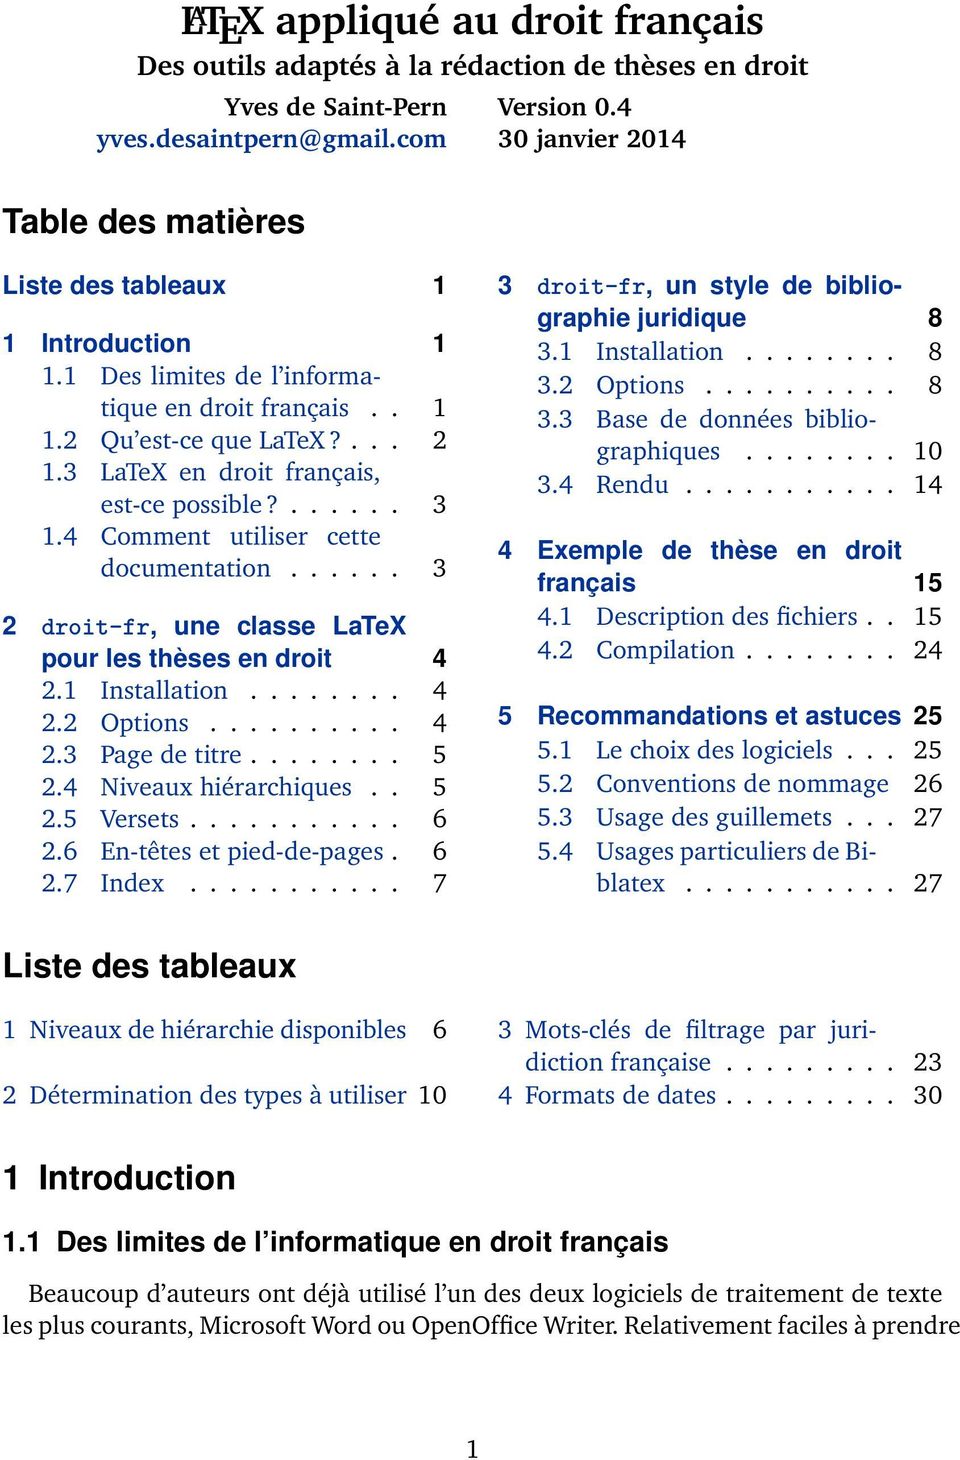 4 Comment utiliser cette documentation...... 3 2 droit-fr, une classe LaTeX pour les thèses en droit 4 2.1 Installation........ 4 2.2 Options.......... 4 2.3 Page de titre........ 5 2.